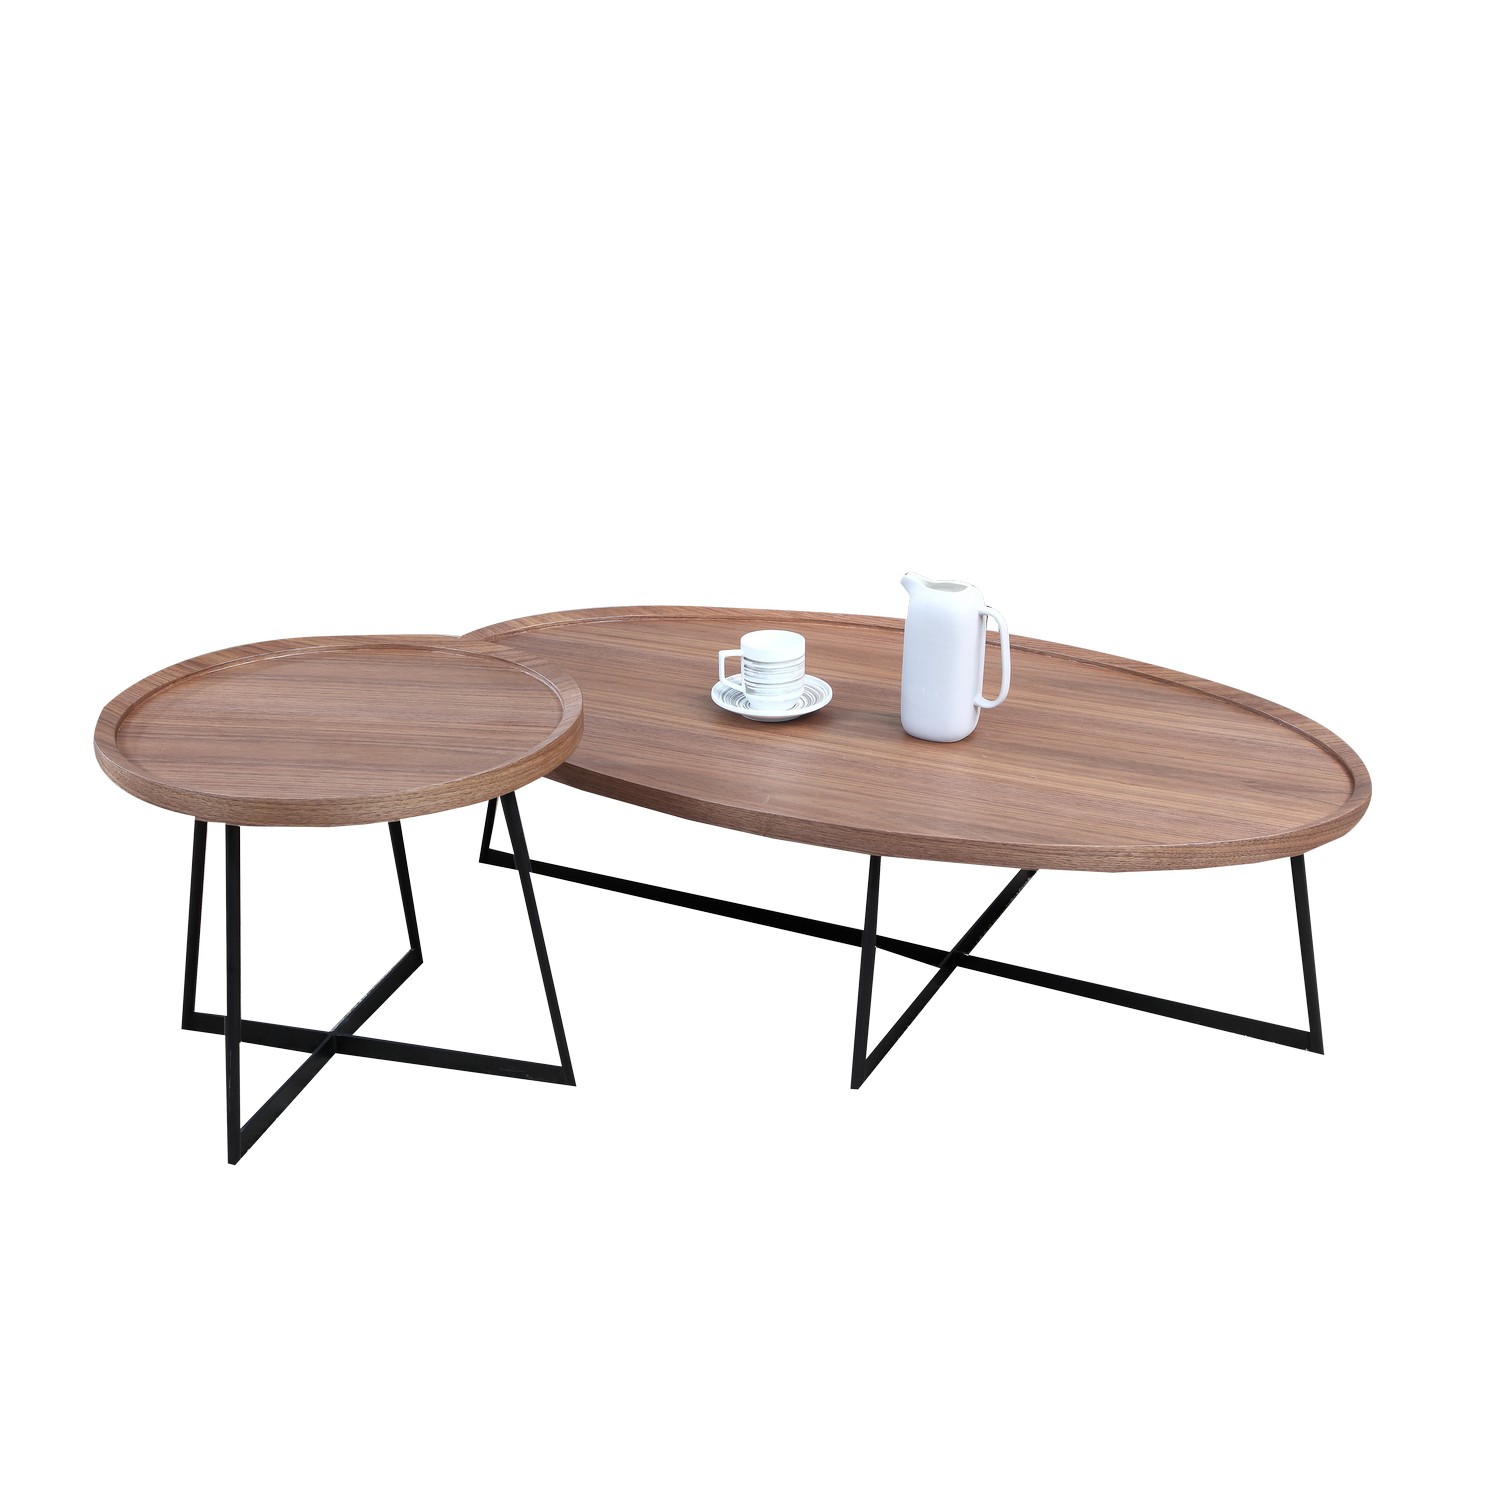 Brc6588a Oval Wooden Coffee Table Carlo Hofmann